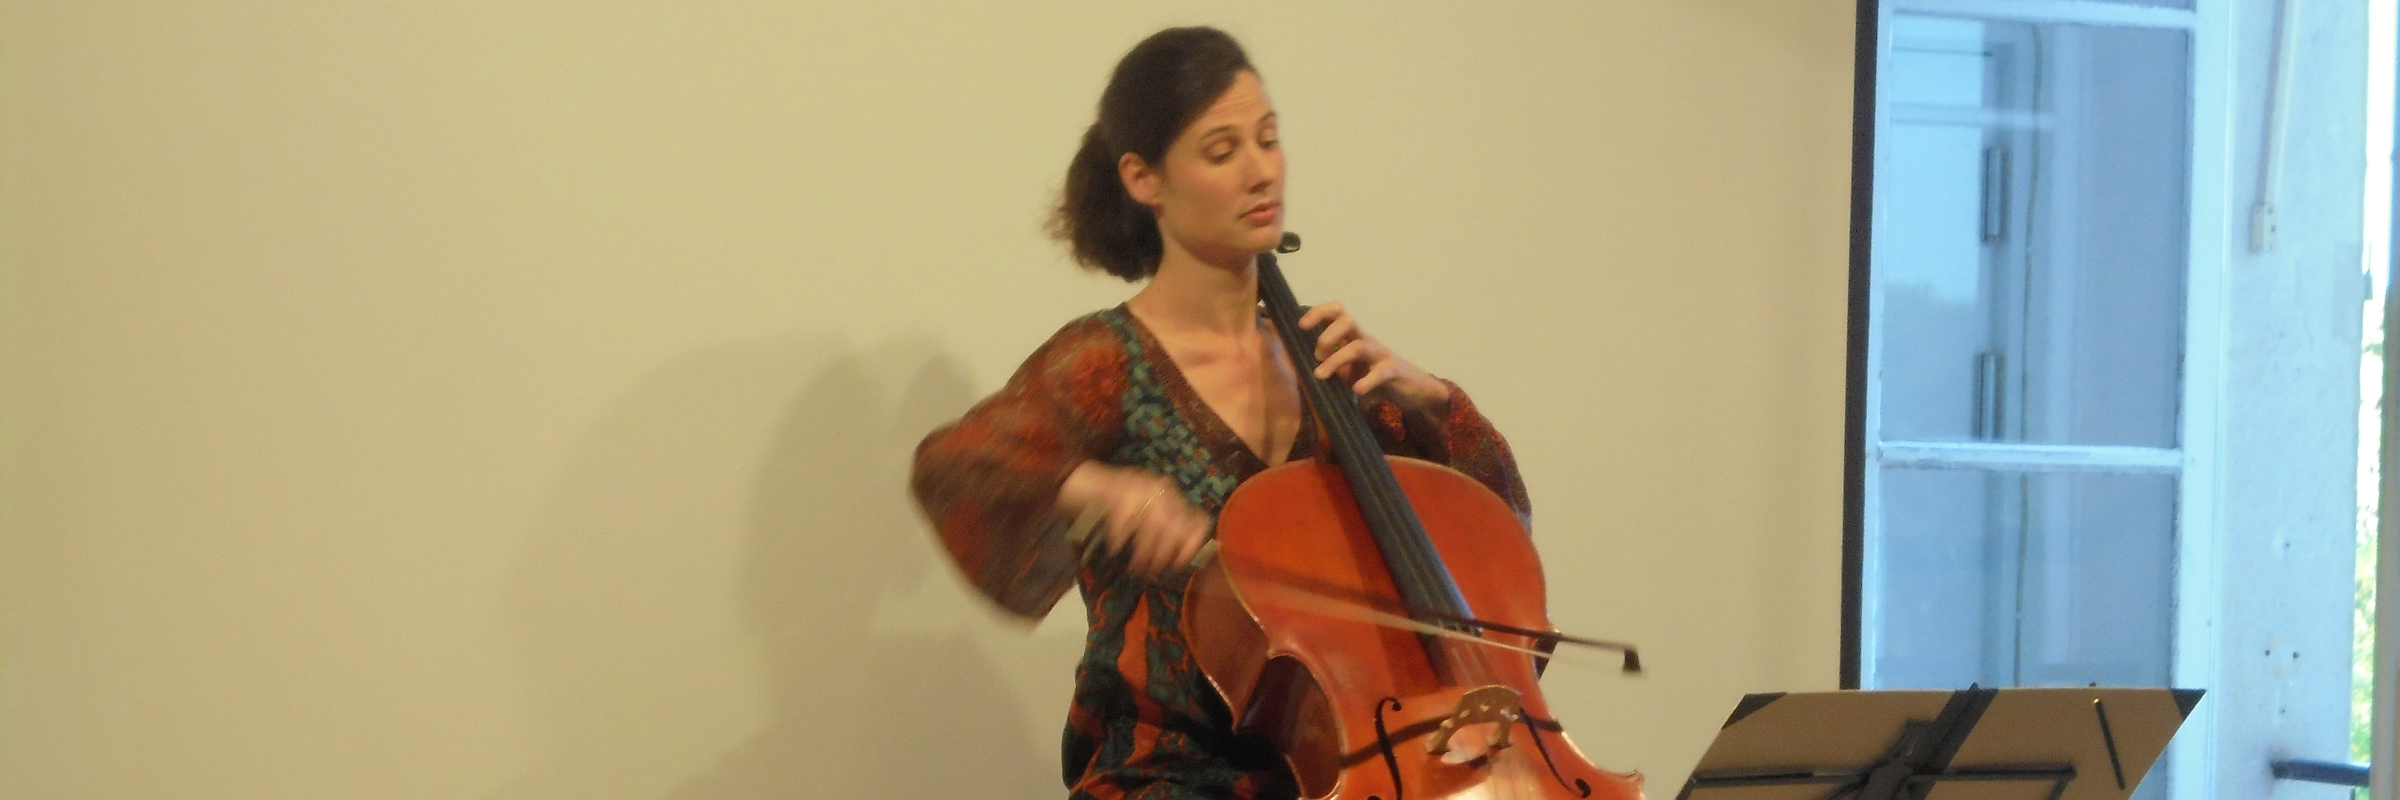 Bohdana Horecka, musicien Musique Slave en représentation à Val de Marne - photo de couverture n° 3